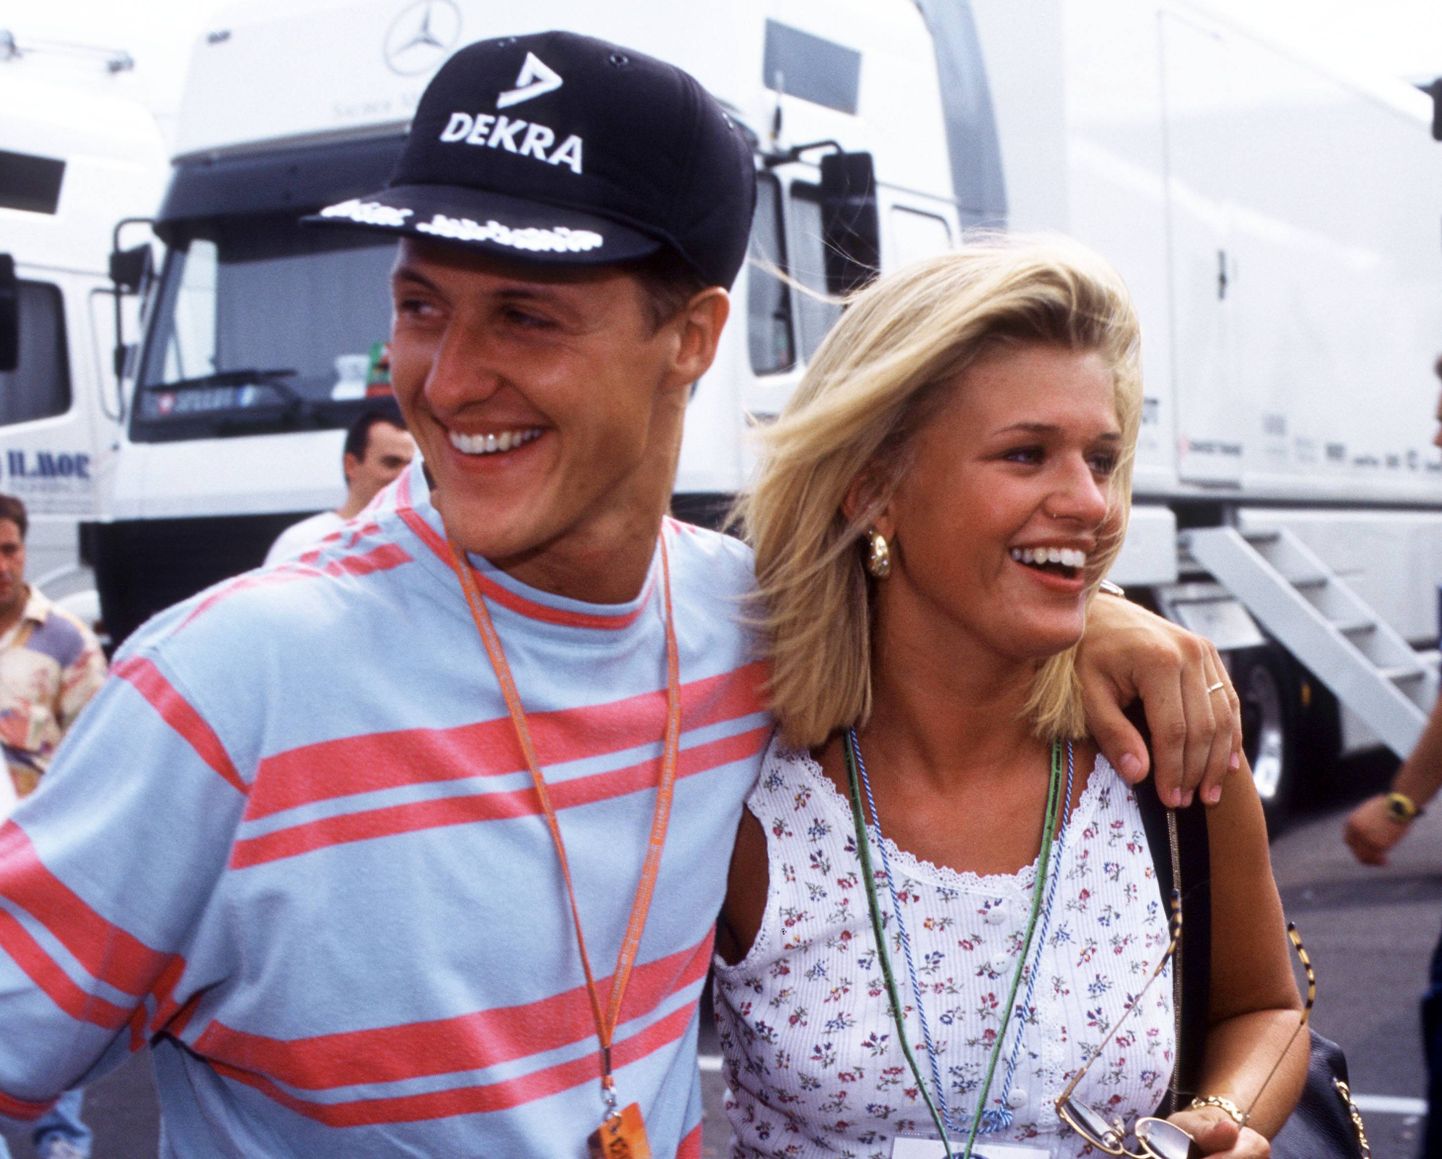 Michael Schumacher ja abikaasa Corinna aastaid enne mehe traagilist suusaõnnetust.